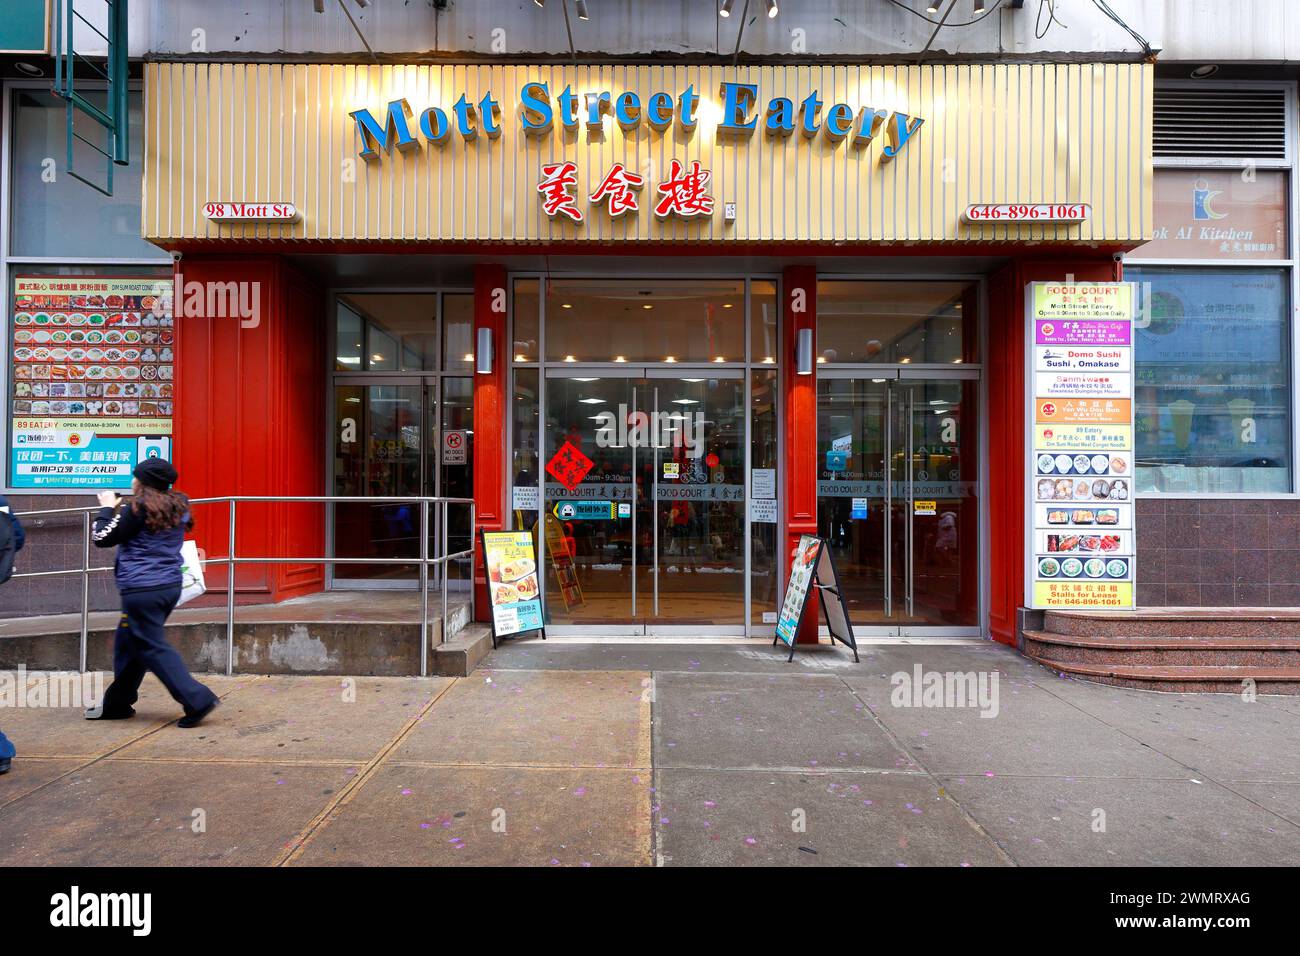 Mott Street Eatery, 98 Mott St, New York, New York, NYC Storefront Foto von einem Food Court in Manhattan Chinatown. Stockfoto